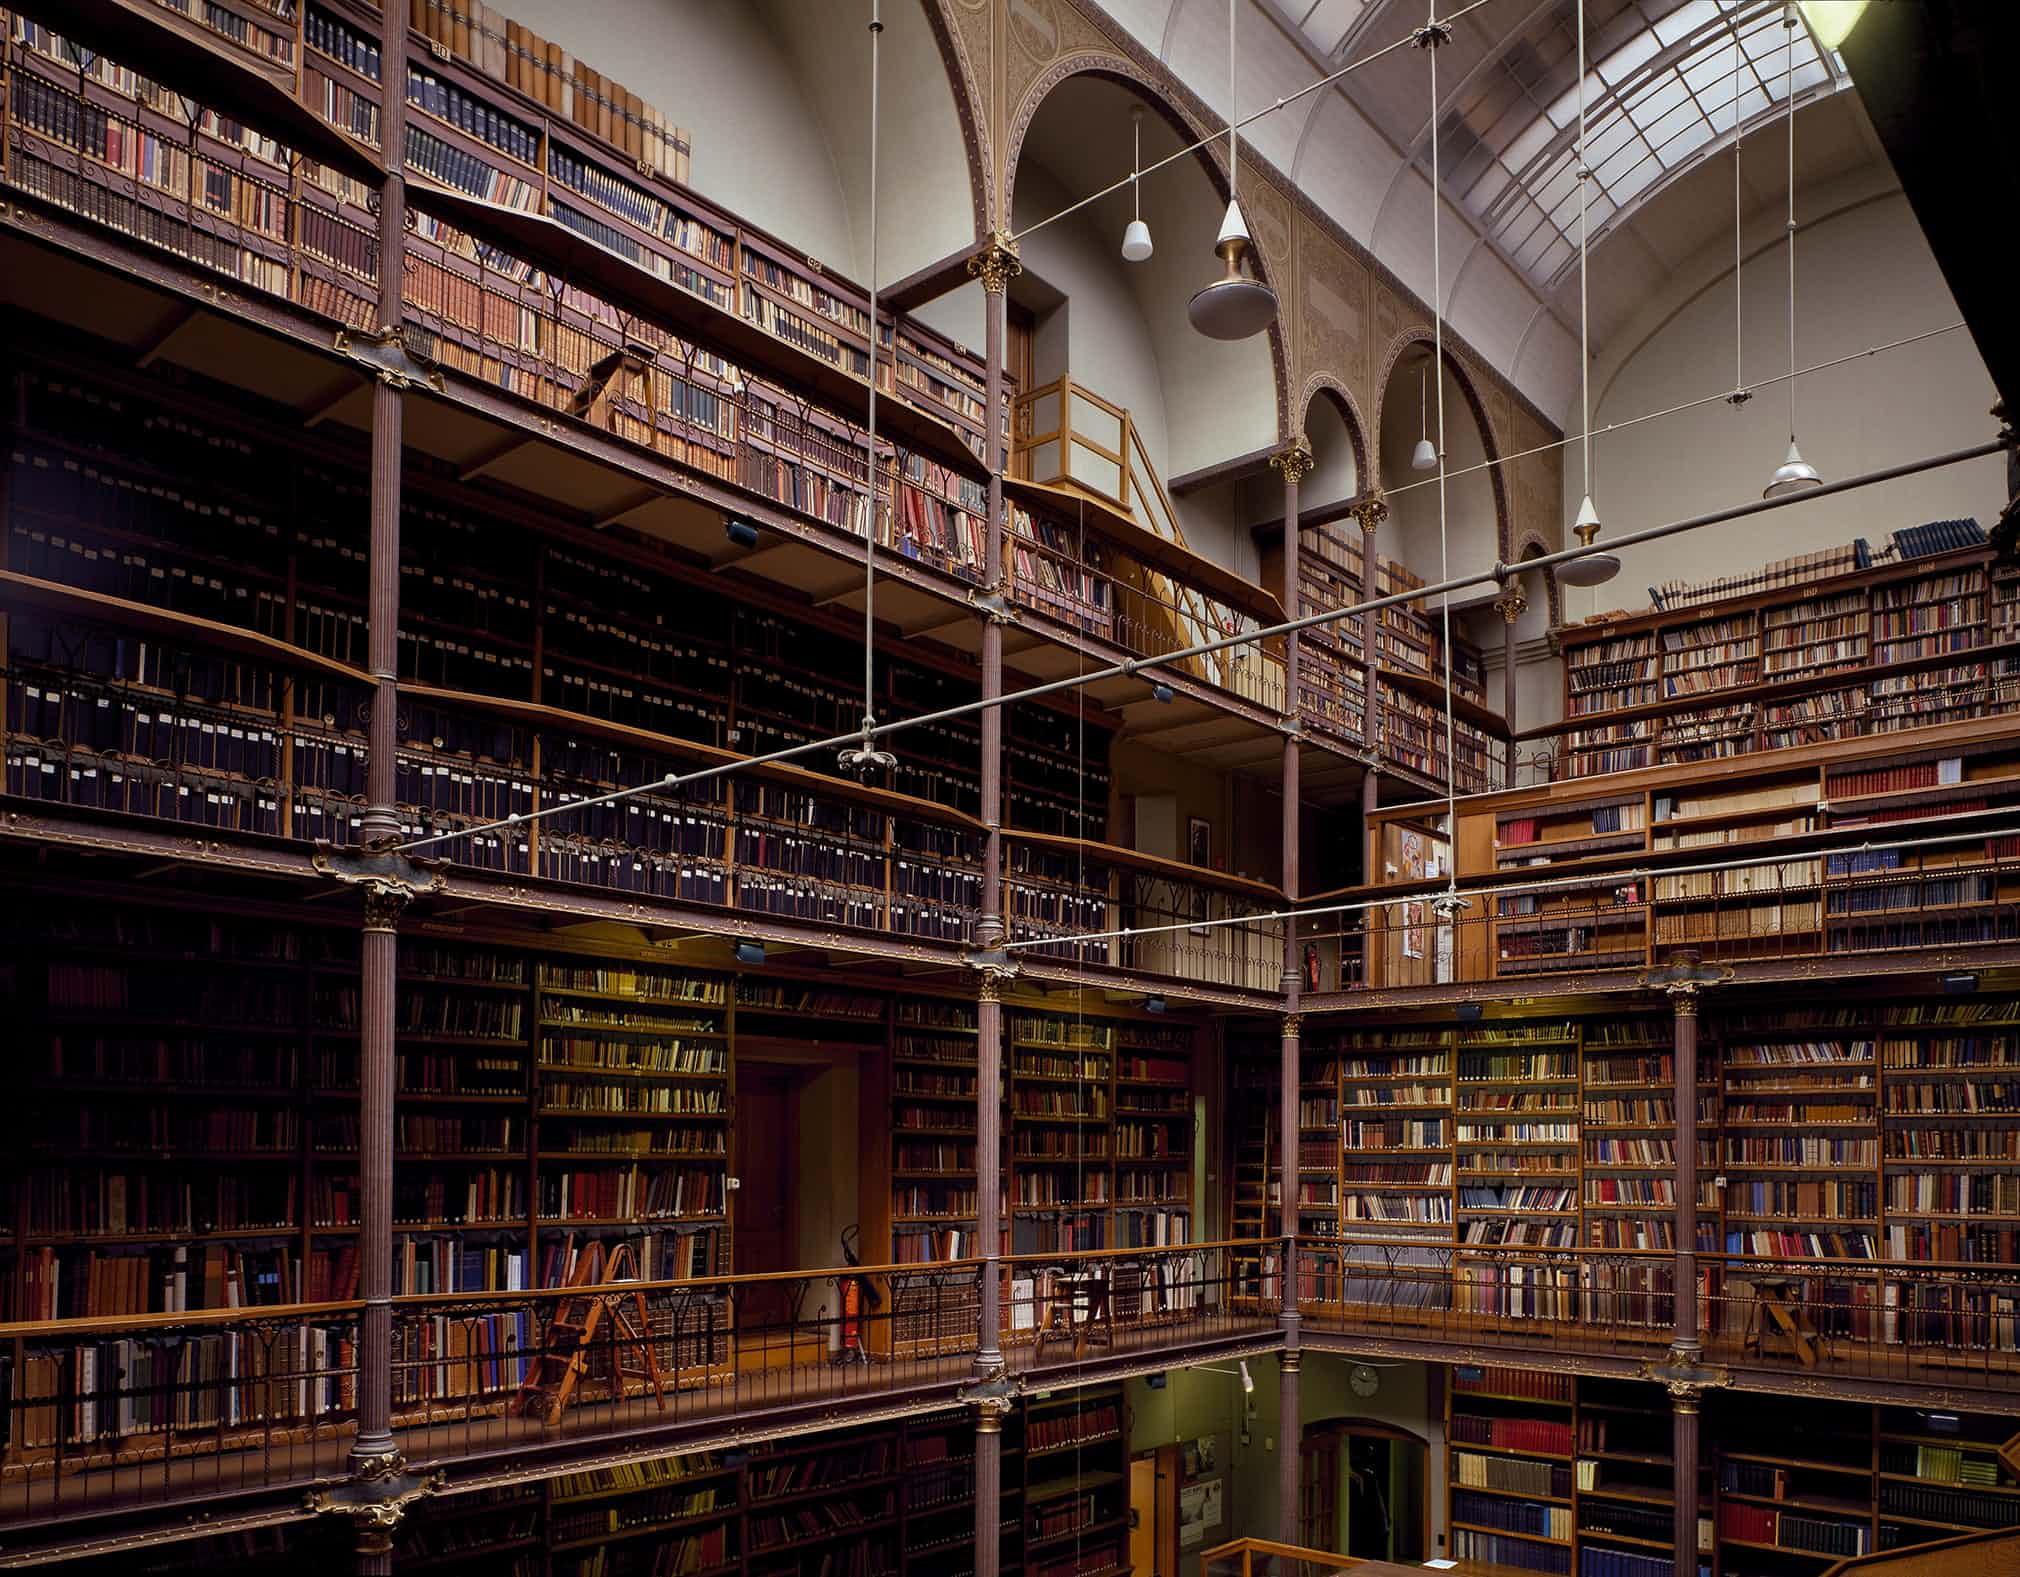 G library. Музей Рейксмузеум в Амстердаме библиотека. Самая красивая библиотека в мире. Самые красивые библиотеки.